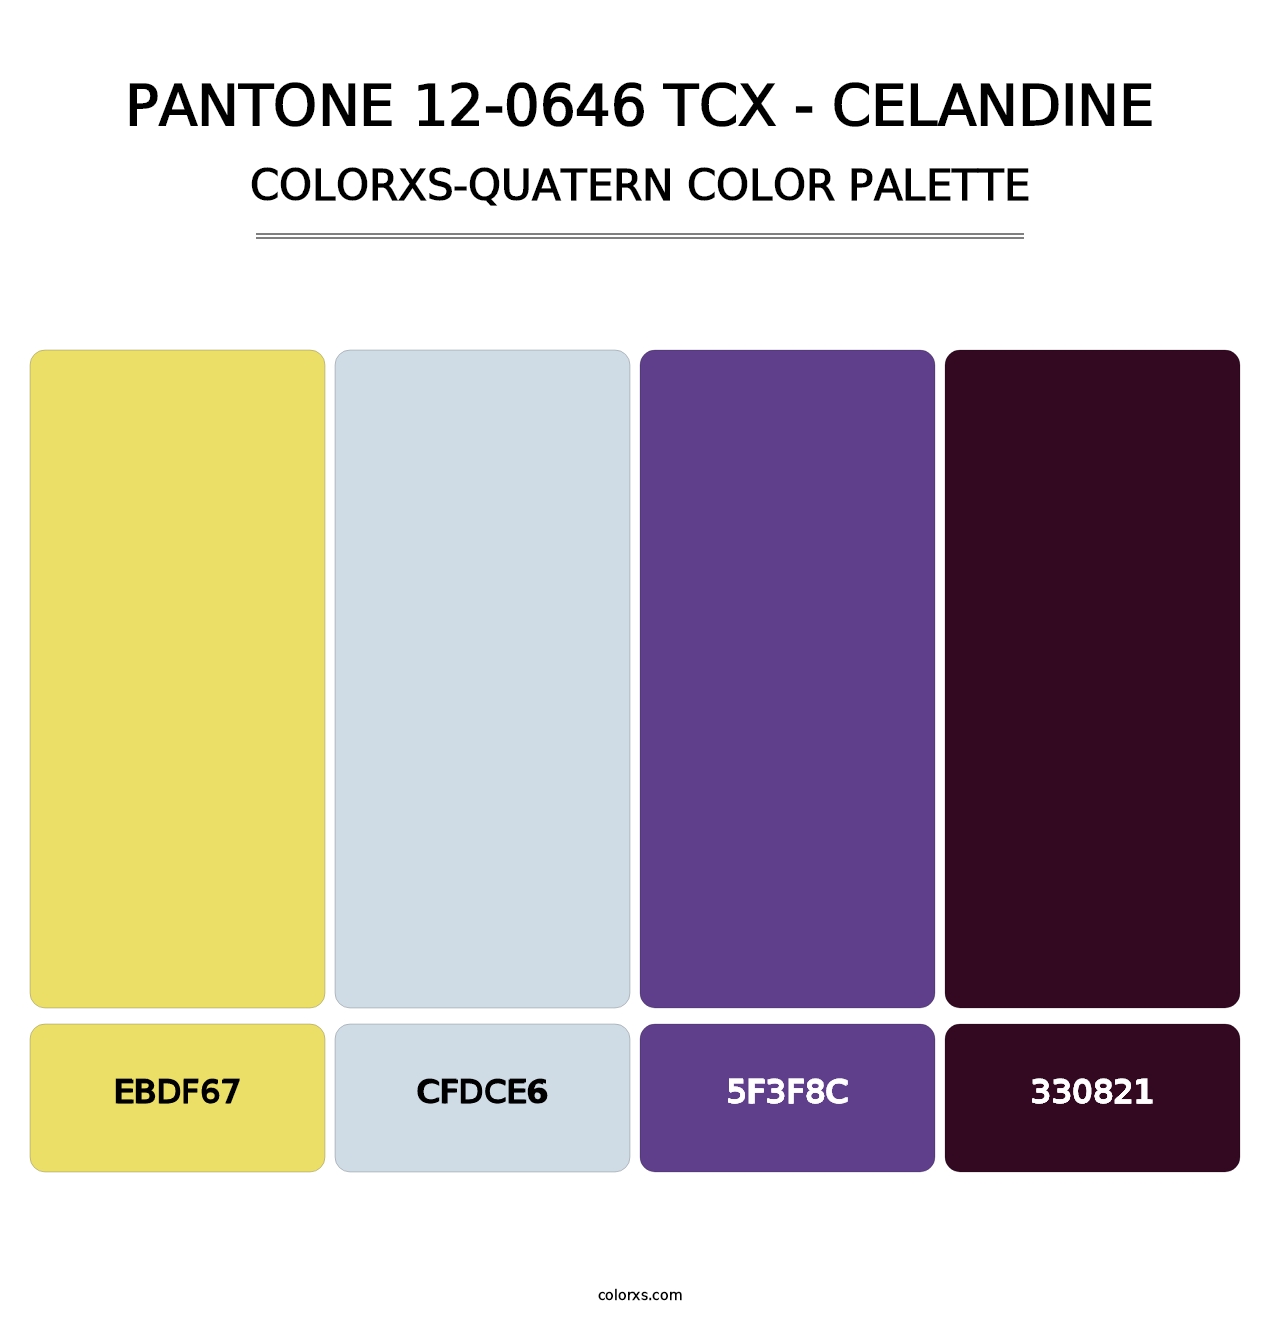 PANTONE 12-0646 TCX - Celandine - Colorxs Quatern Palette